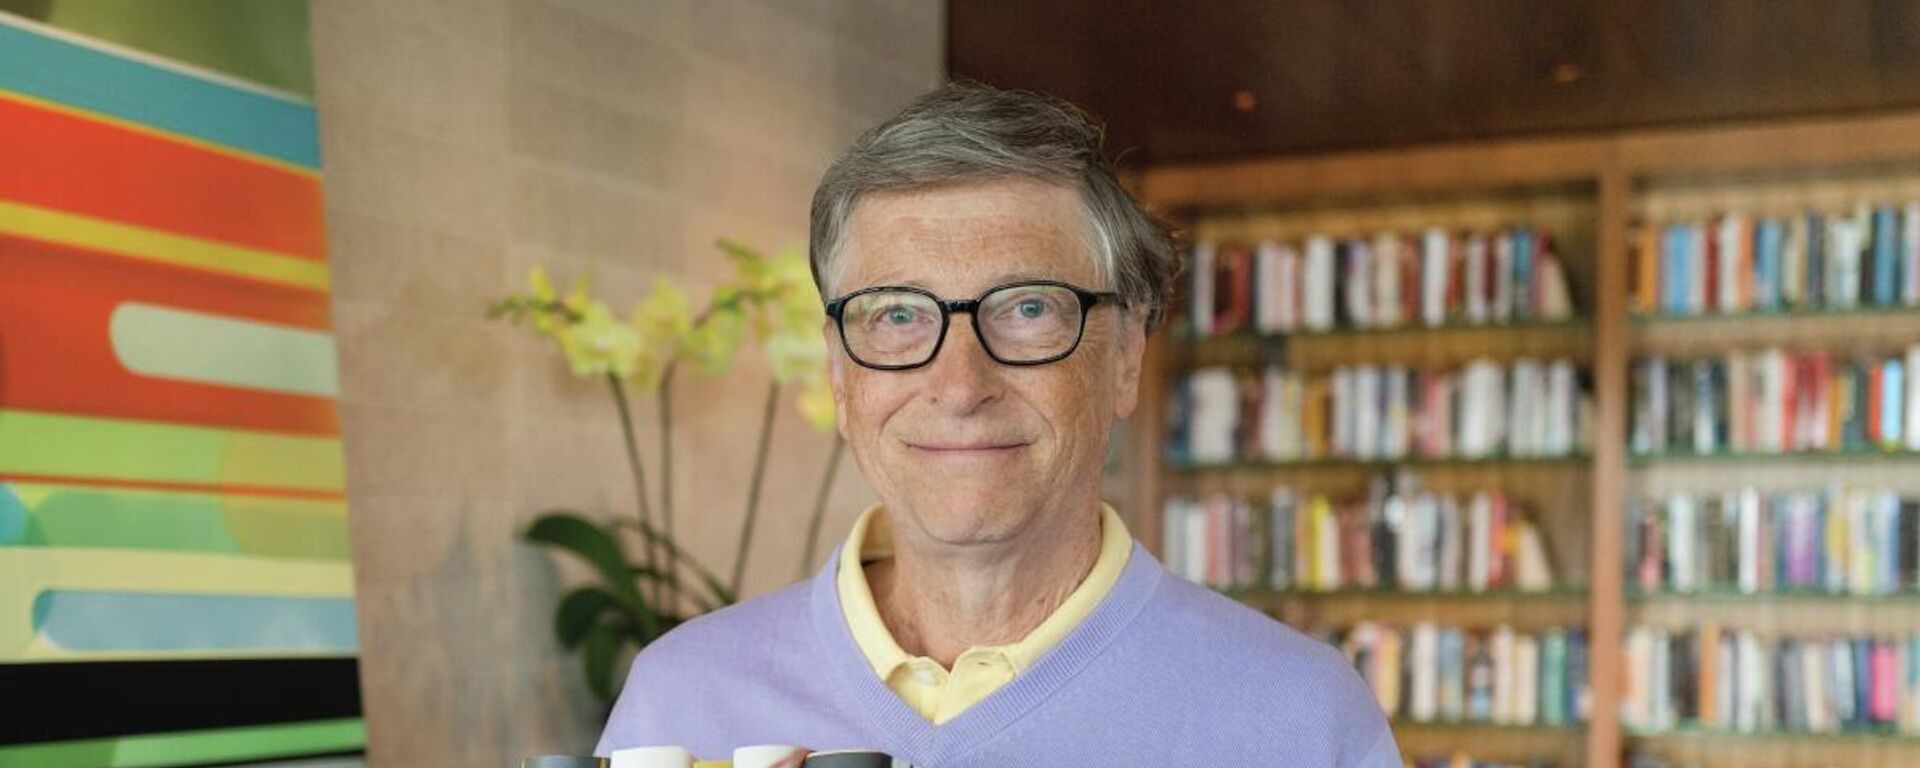 Bill Gates, fundador de Microsoft - Sputnik Mundo, 1920, 16.06.2022